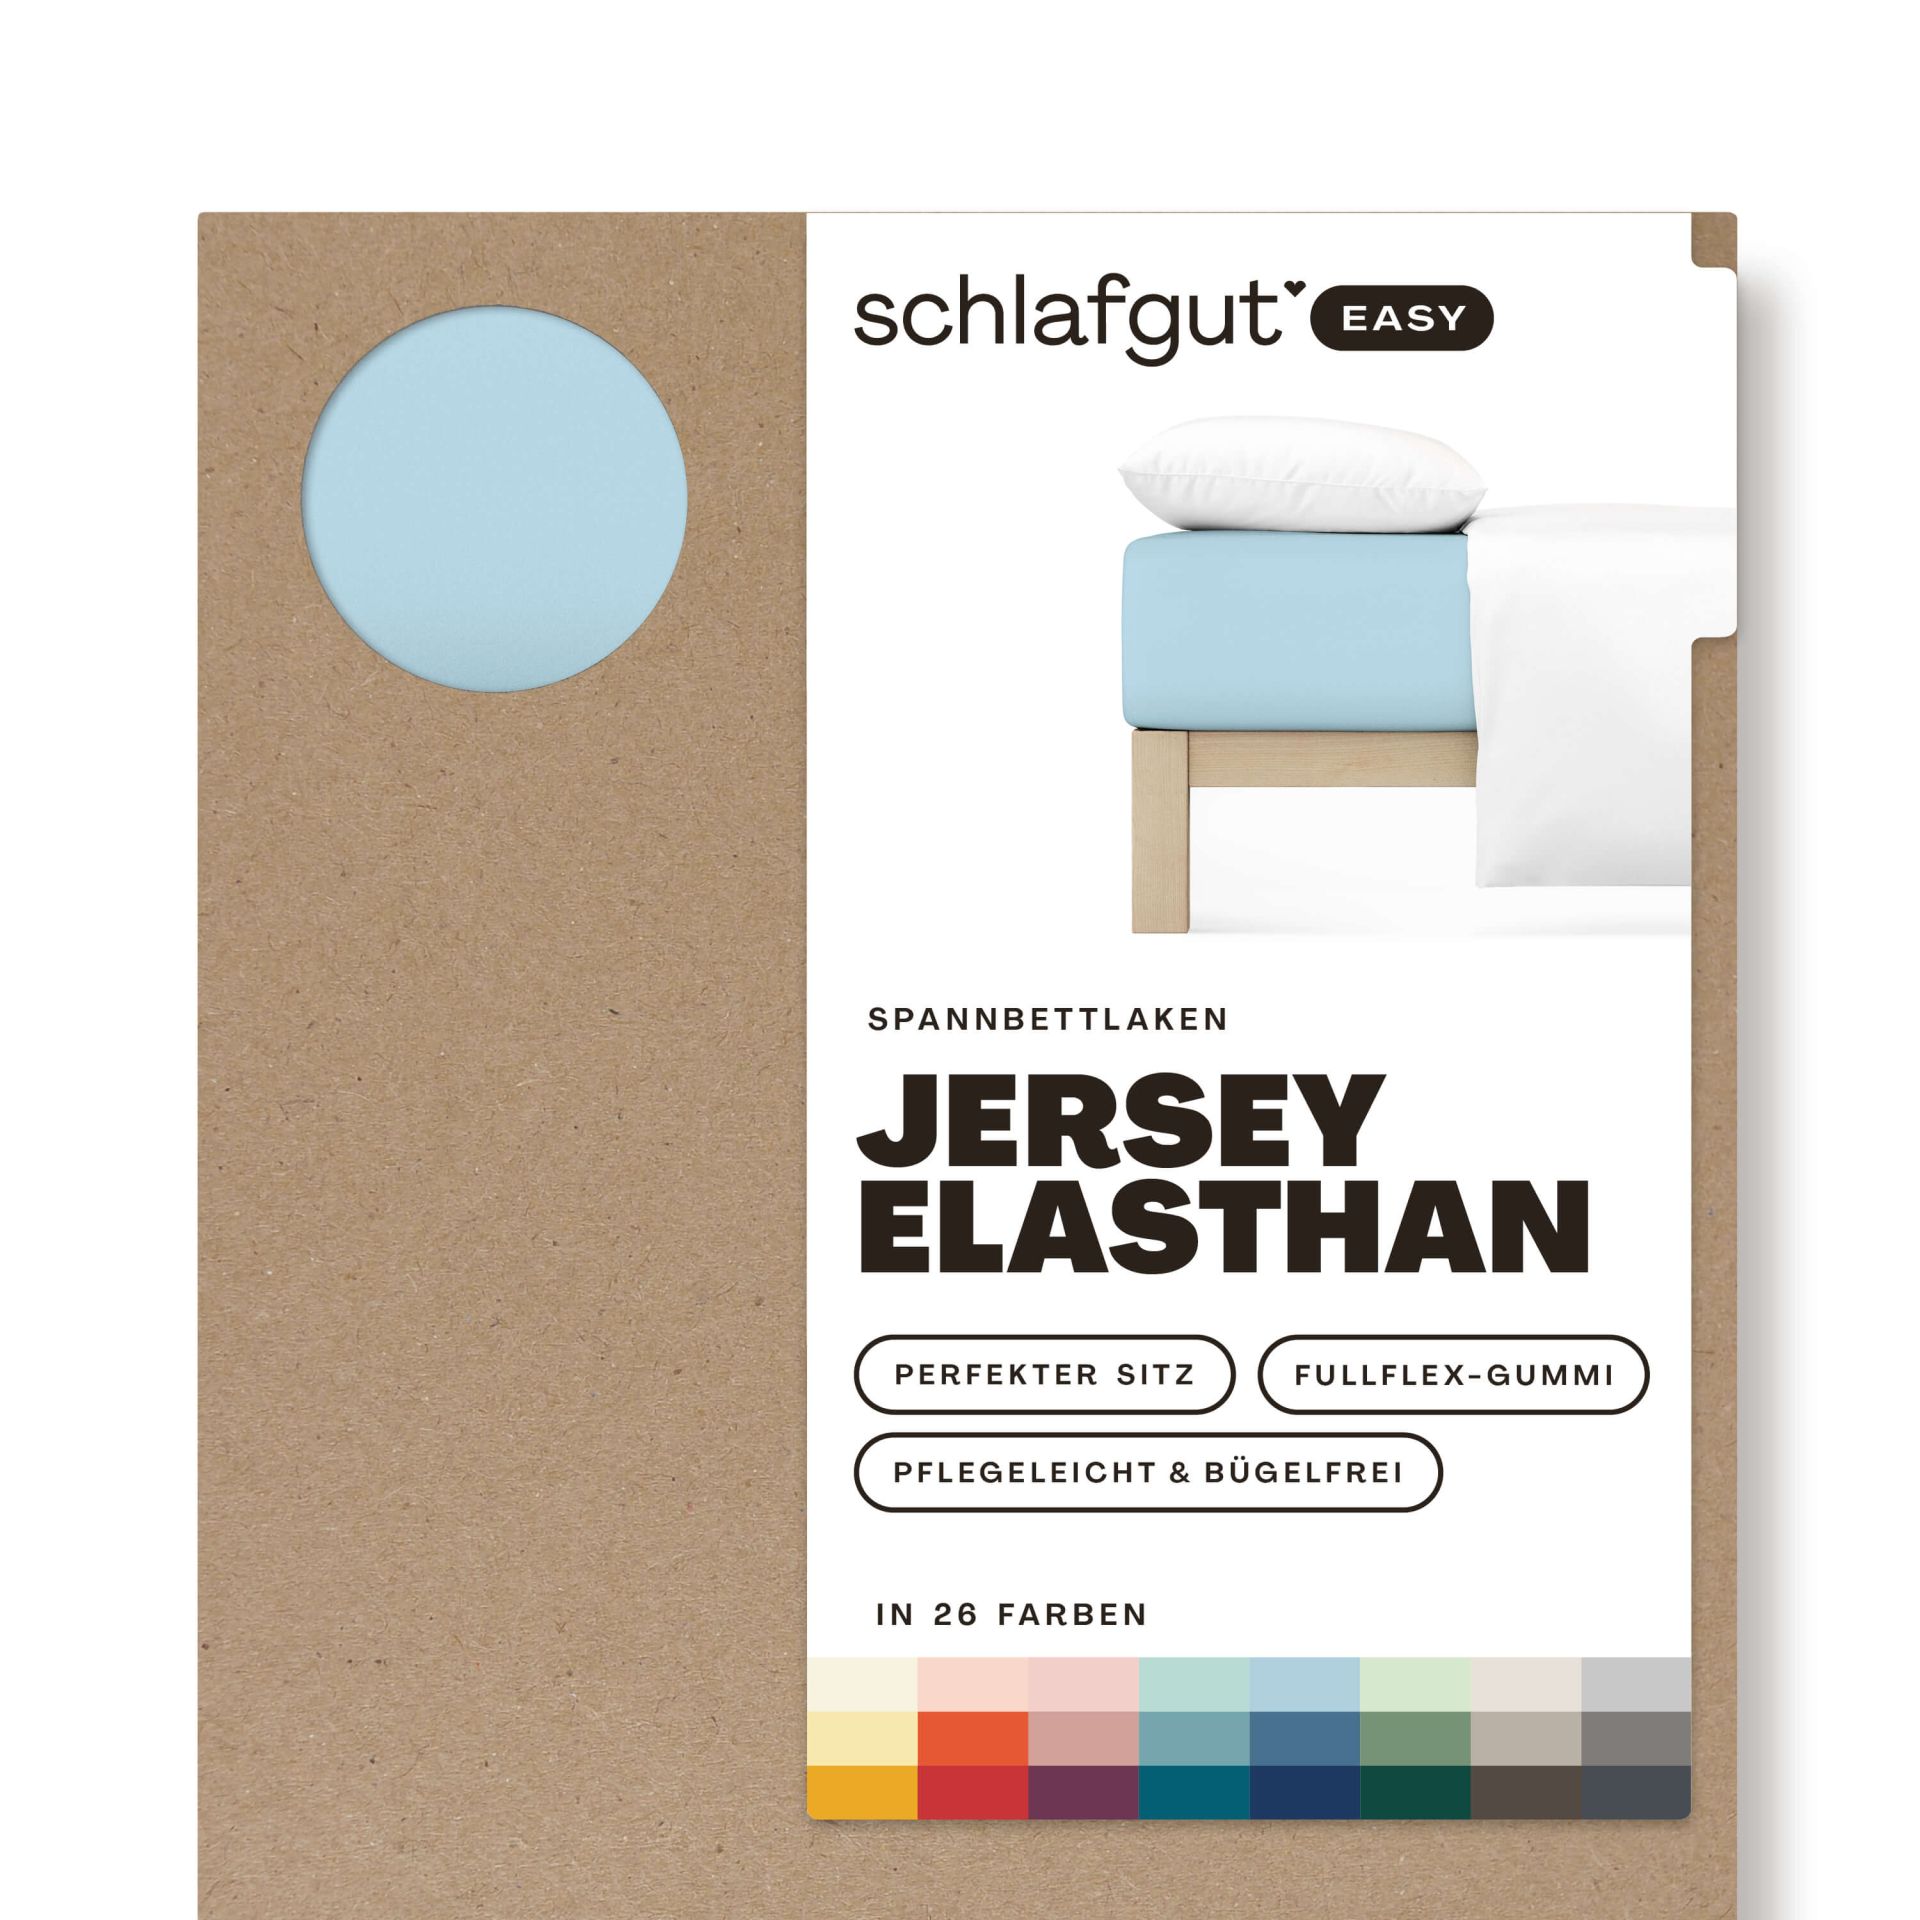 Das Produktbild vom Spannbettlaken der Reihe Easy Elasthan in Farbe blue light von Schlafgut